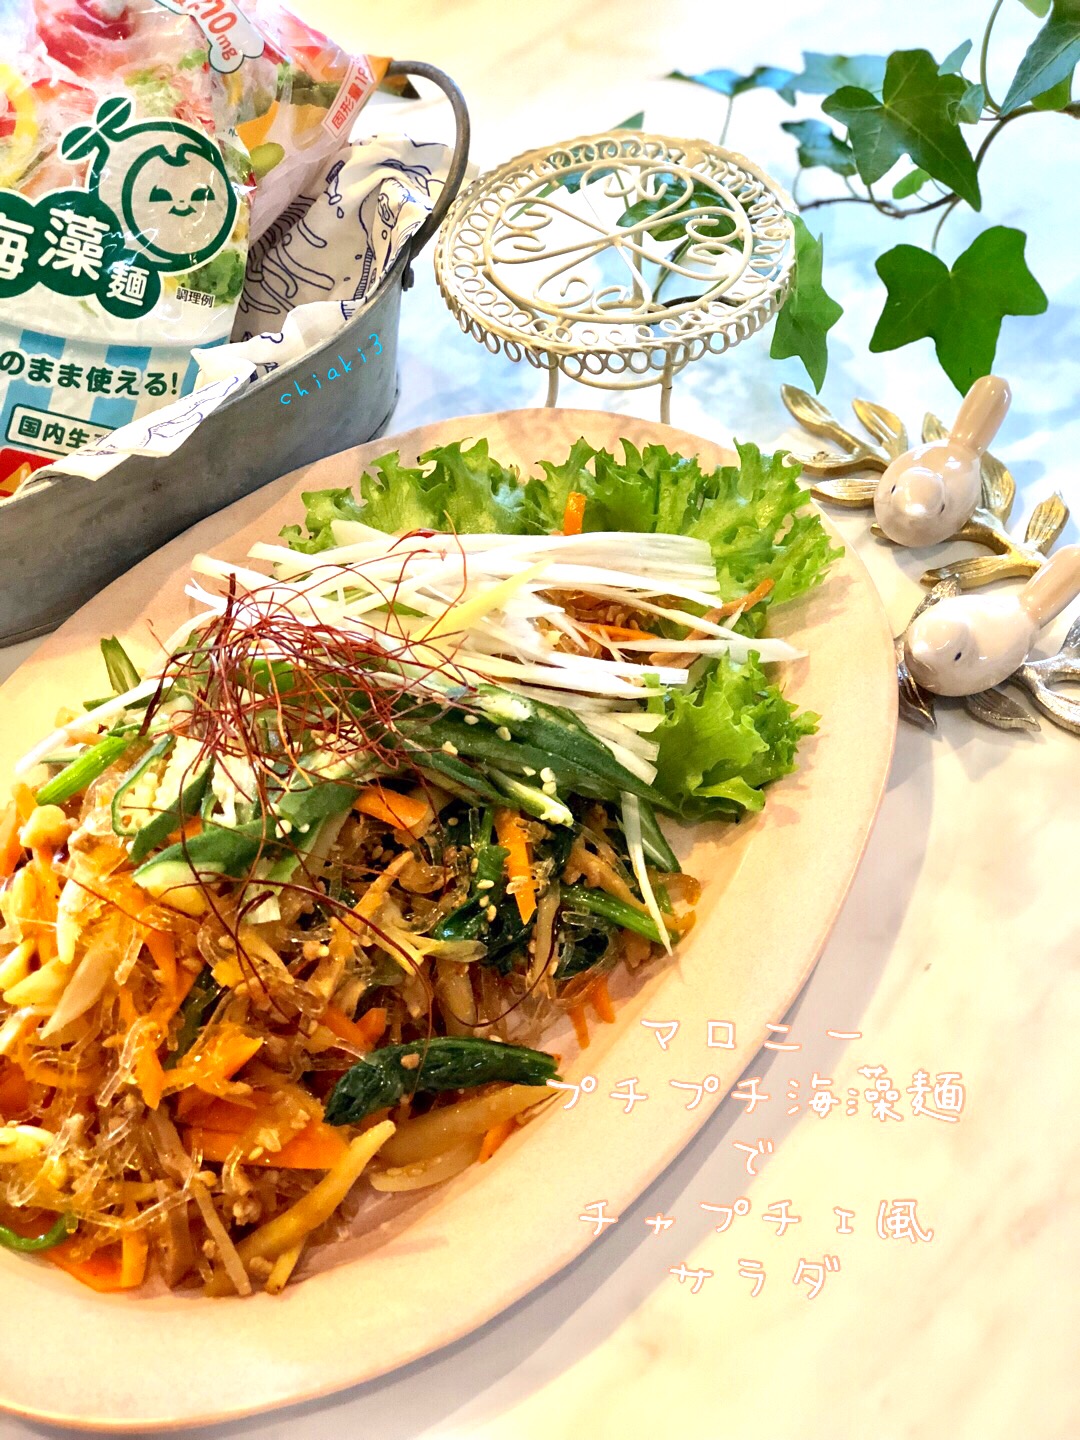 マロニープチプチ海藻麺でチャプチェ風サラダ 作りたても冷やしても美味しい✨✨ カルシウム・食物繊維豊富でゼロカロリ〜🐷💕